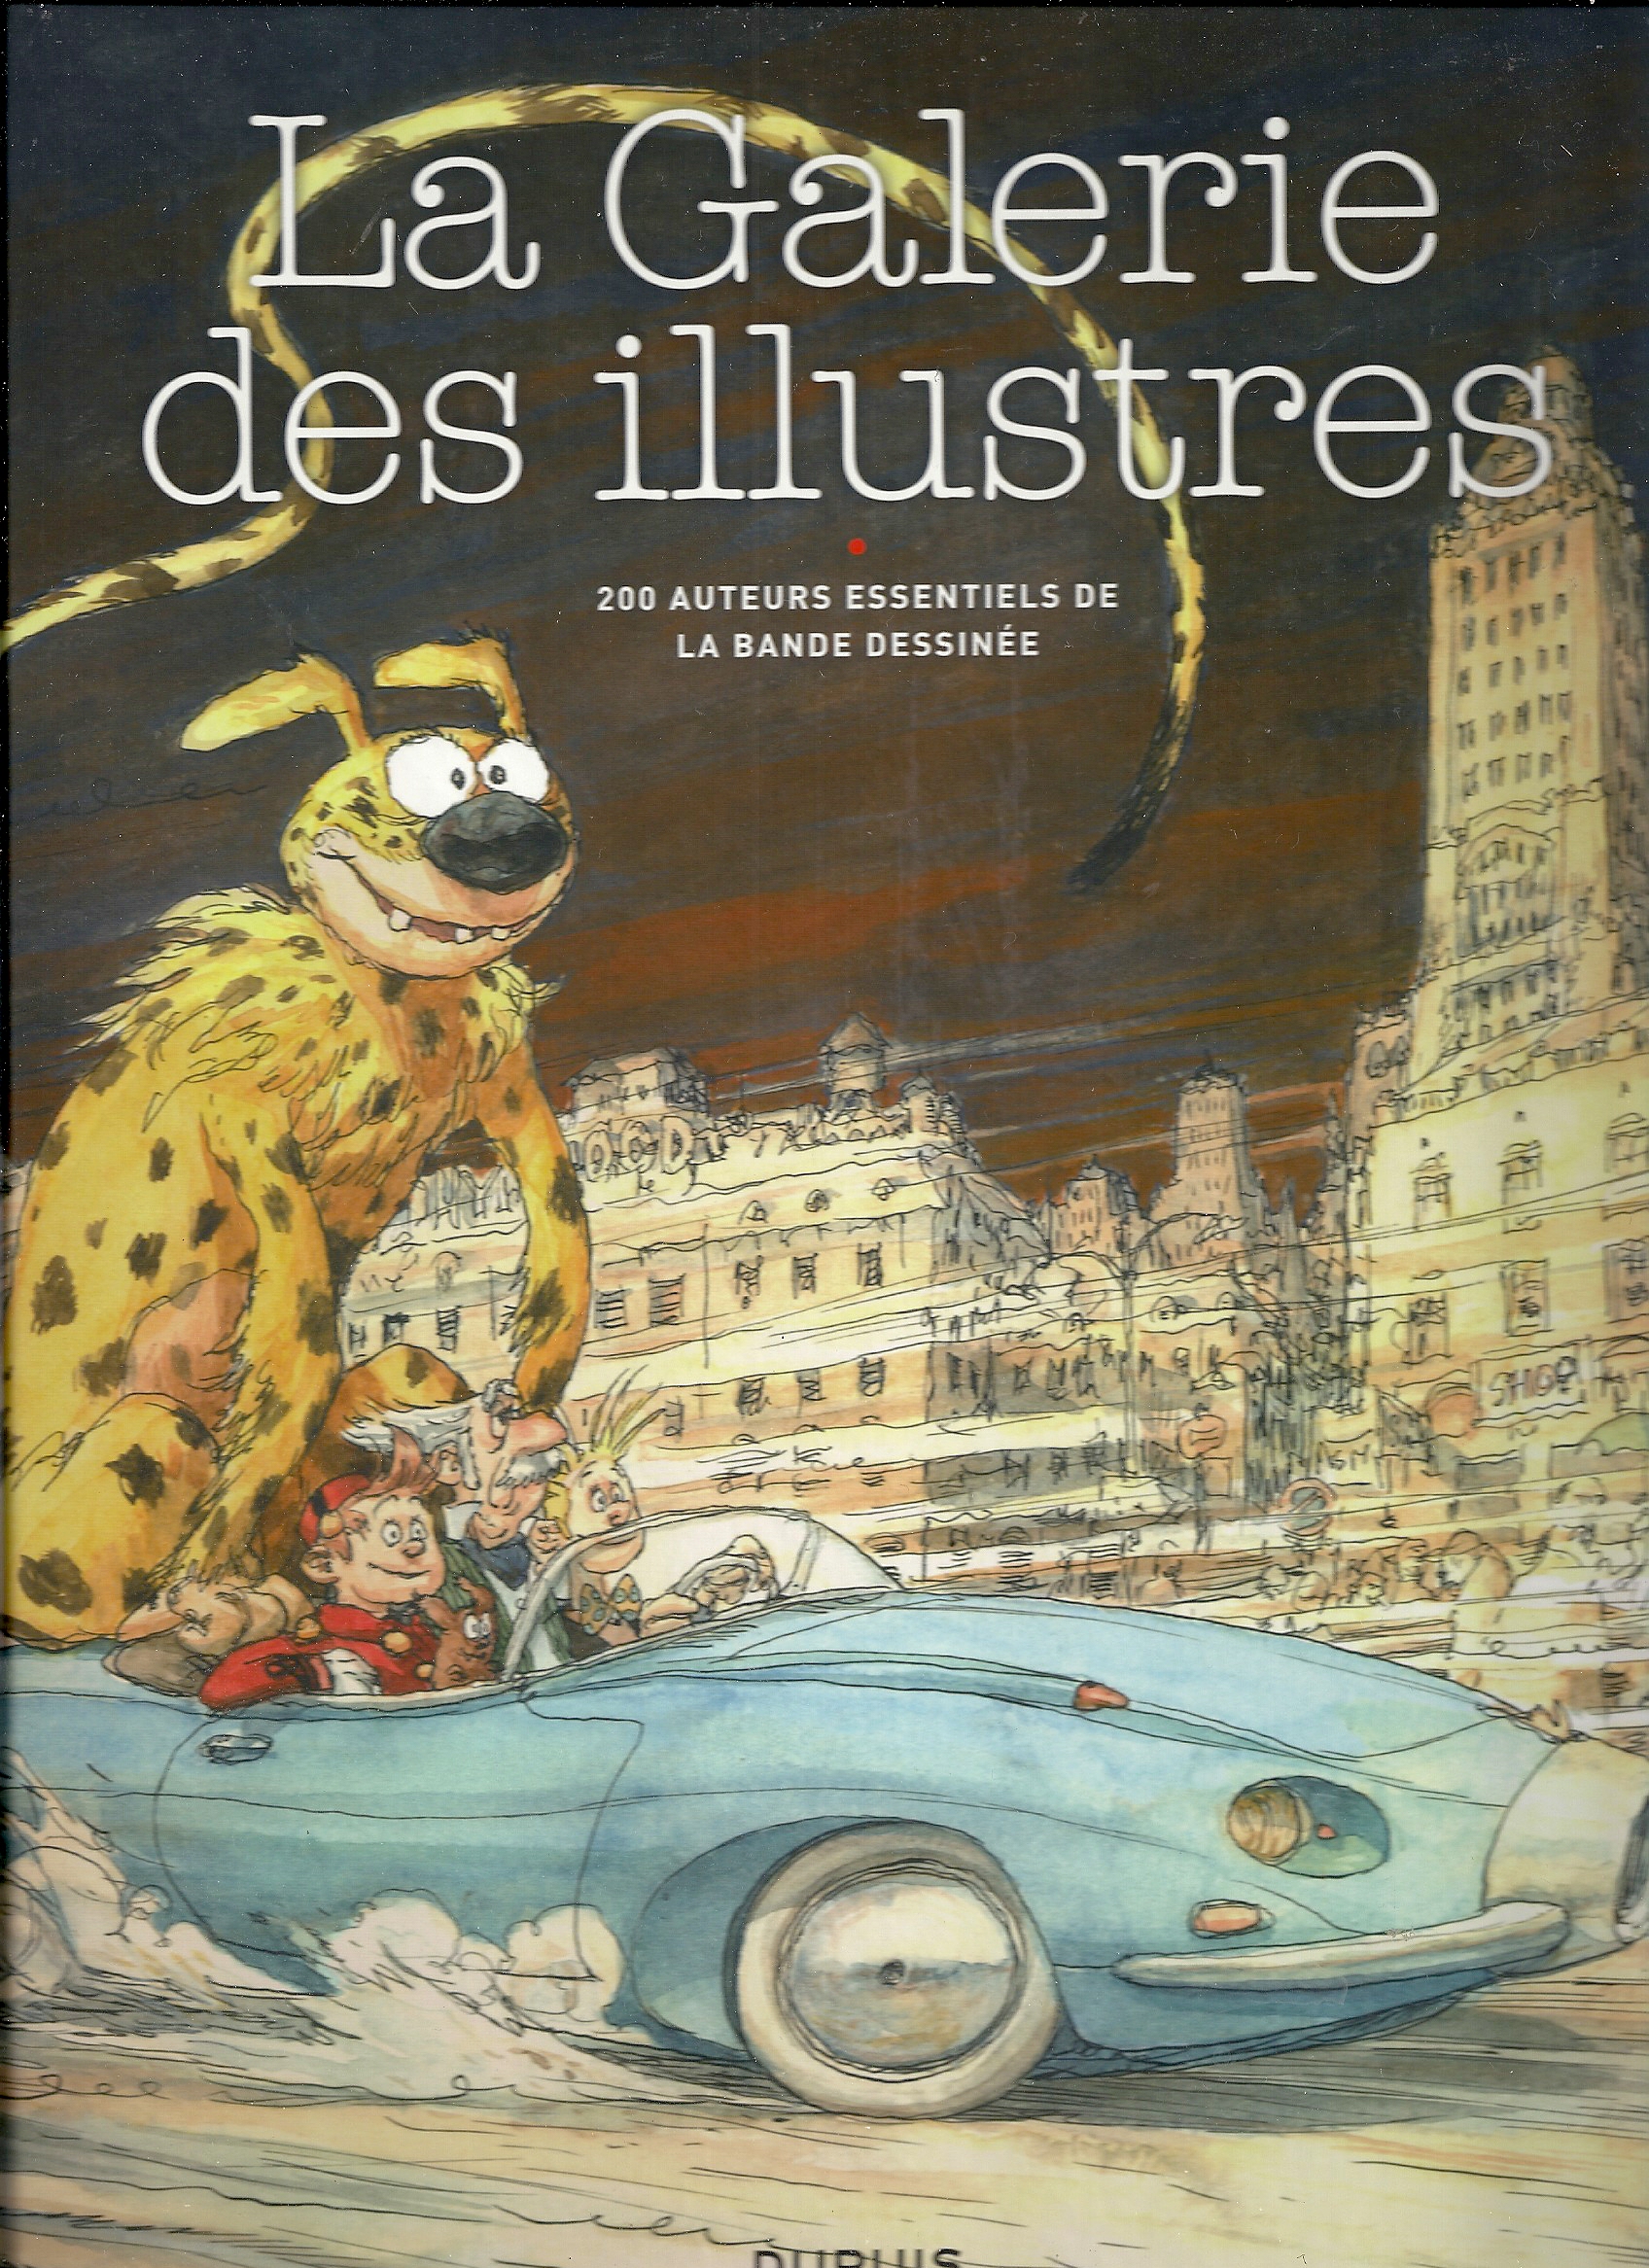 La galerie des illustres Spirou tirage spécial salon du livre 2013